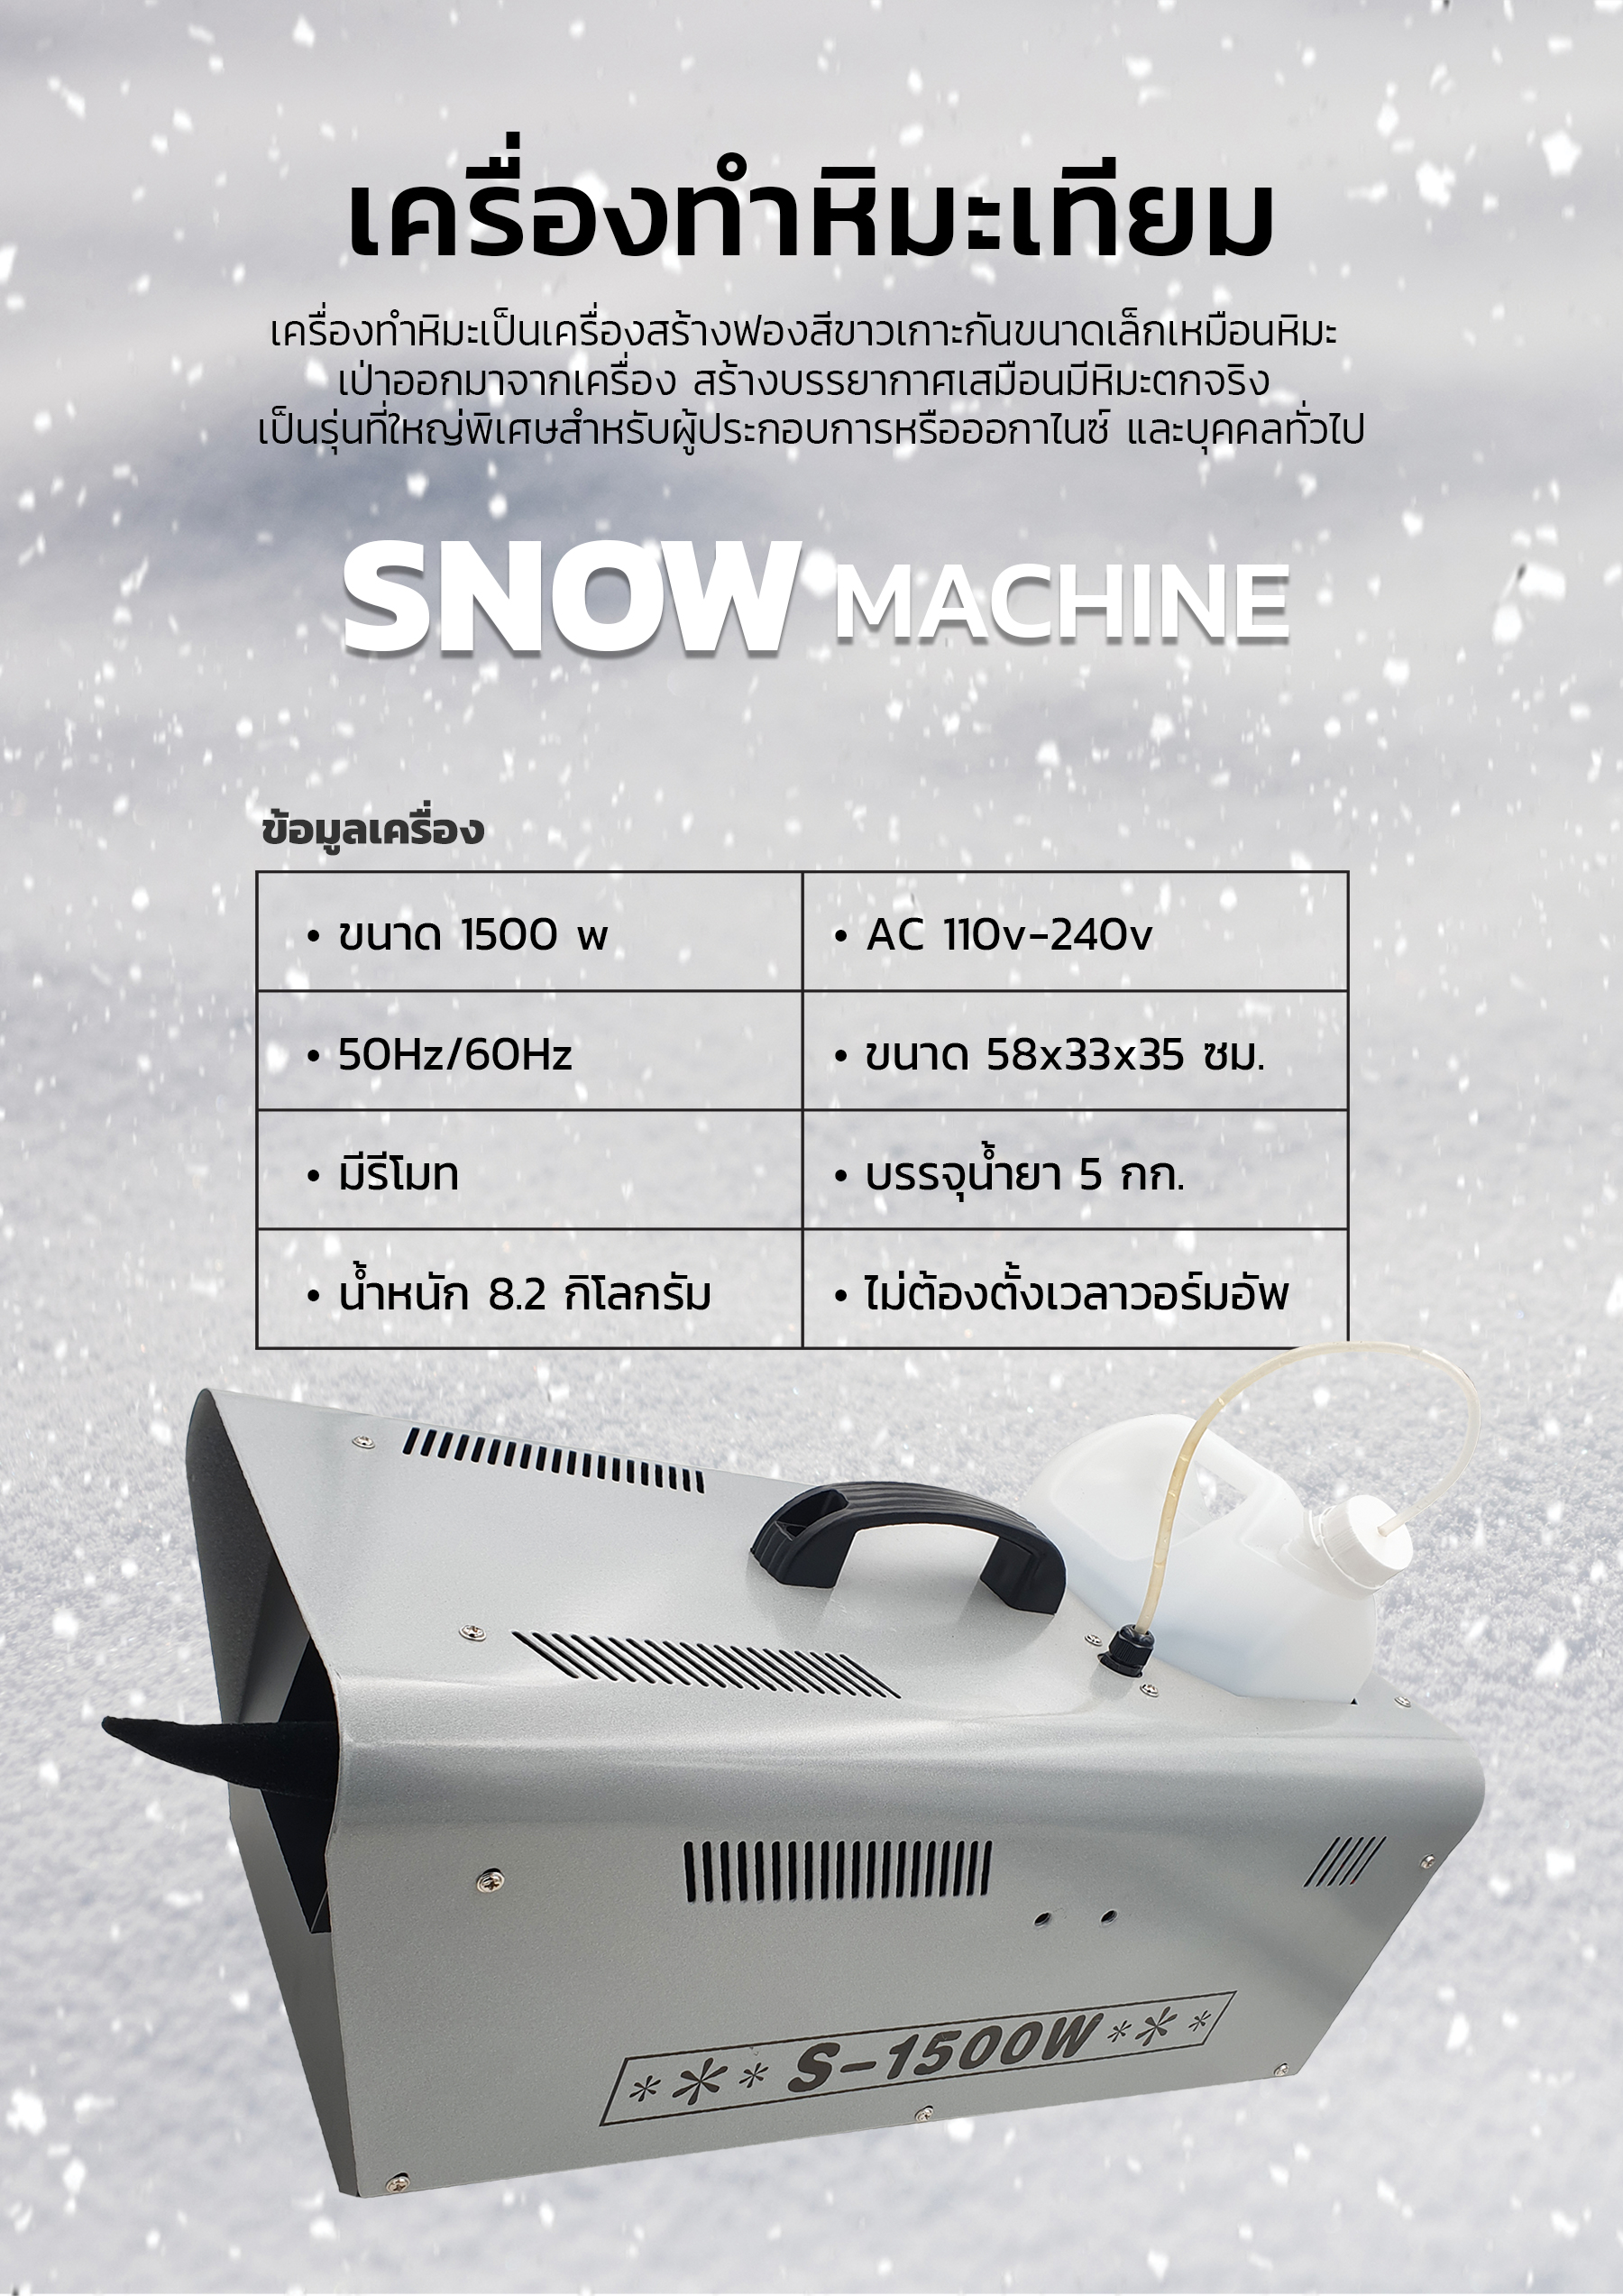 เครื่องทำหิมะ, เครื่องยิงหิมะ, เครื่องสร้างหิมะเทียม, เครื่องพ่นหิมะ, เครื่องทำหิมะจำลอง